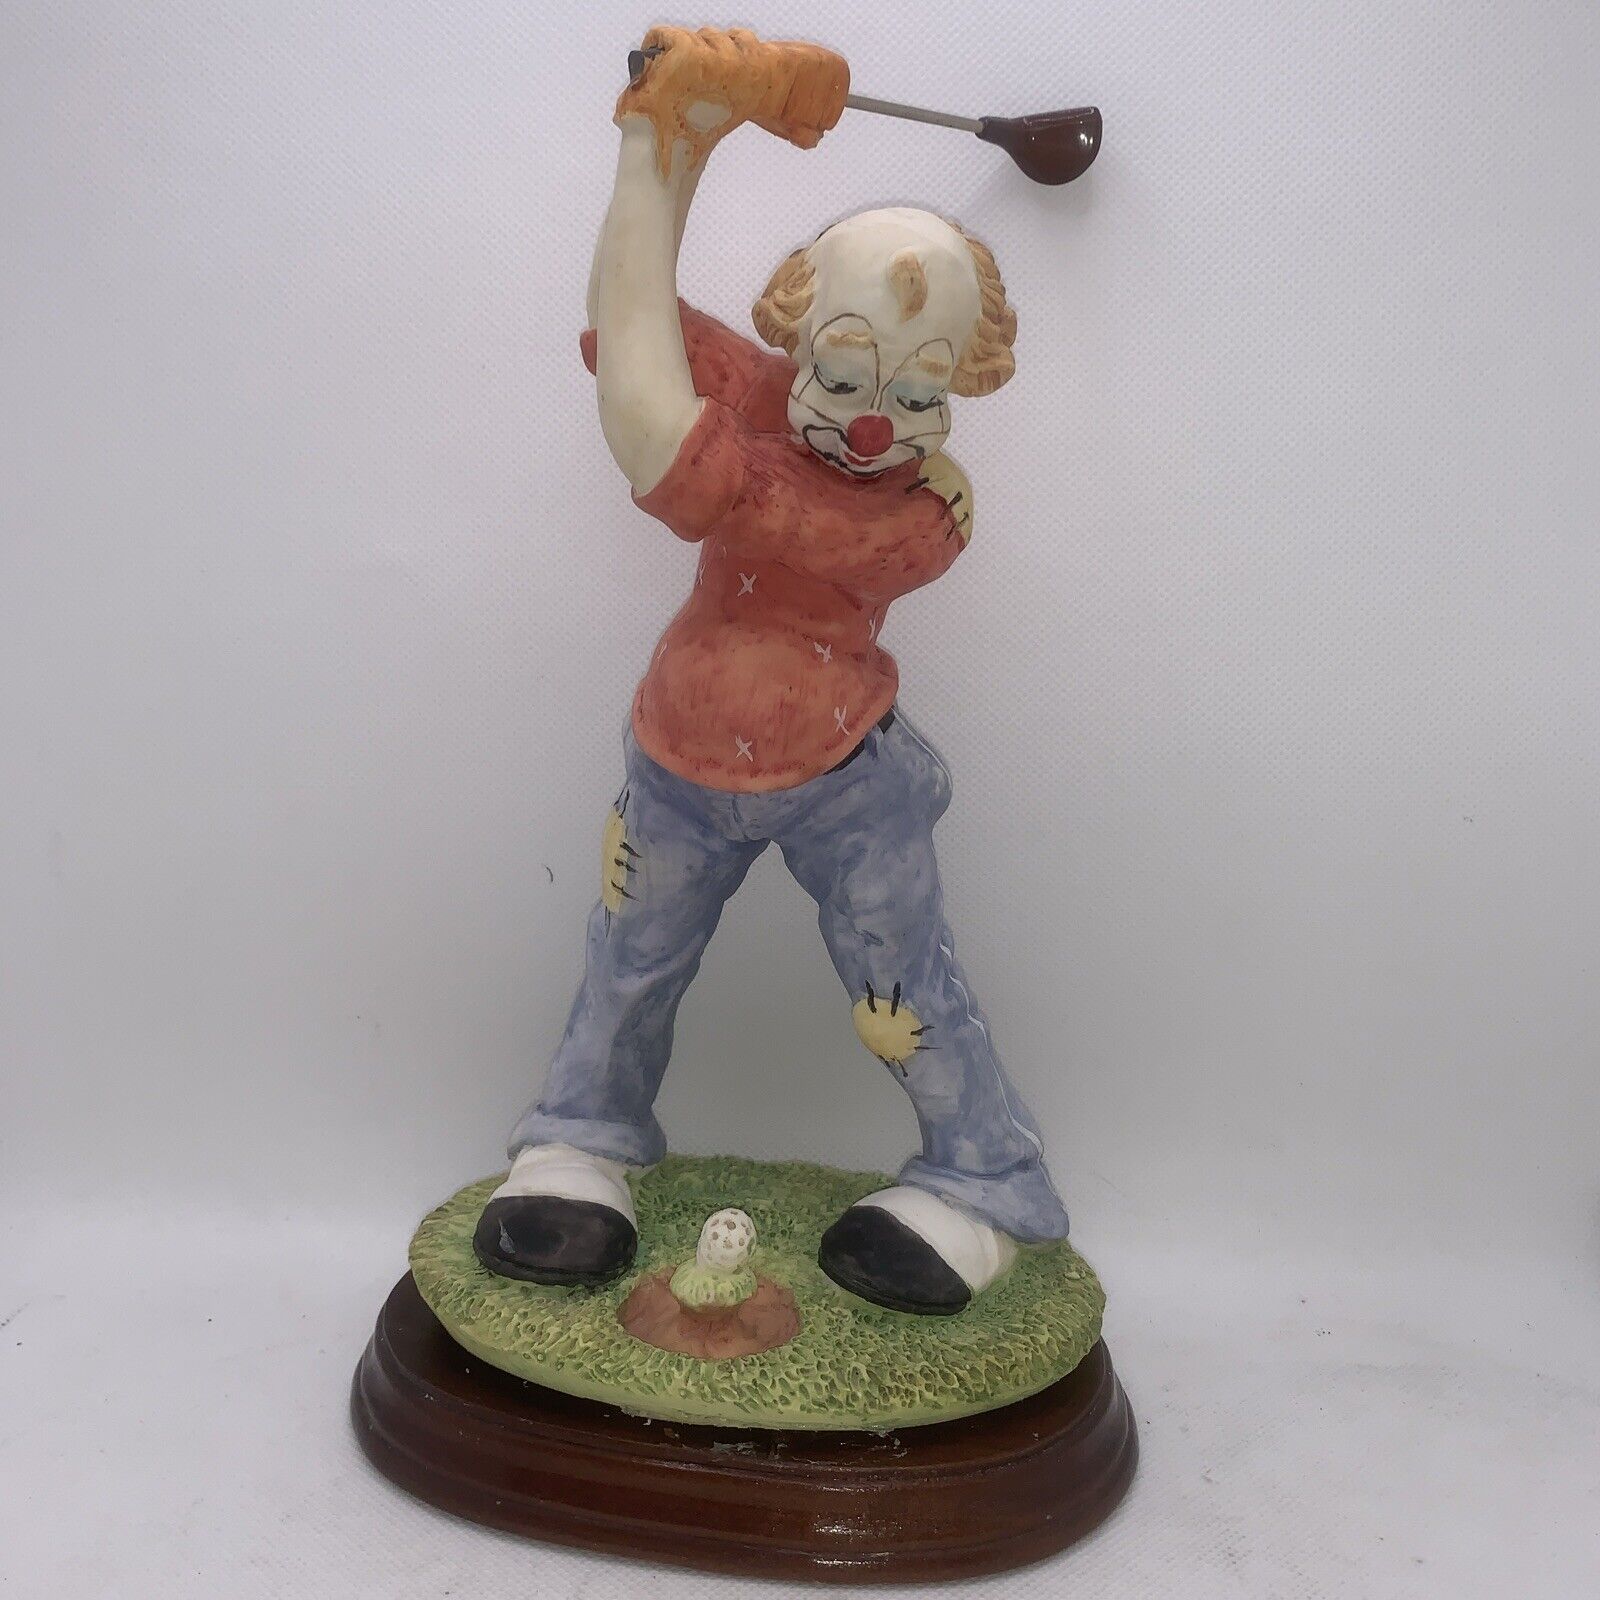 Golfing hilarious figurine clown patch blue green grass gift 10”